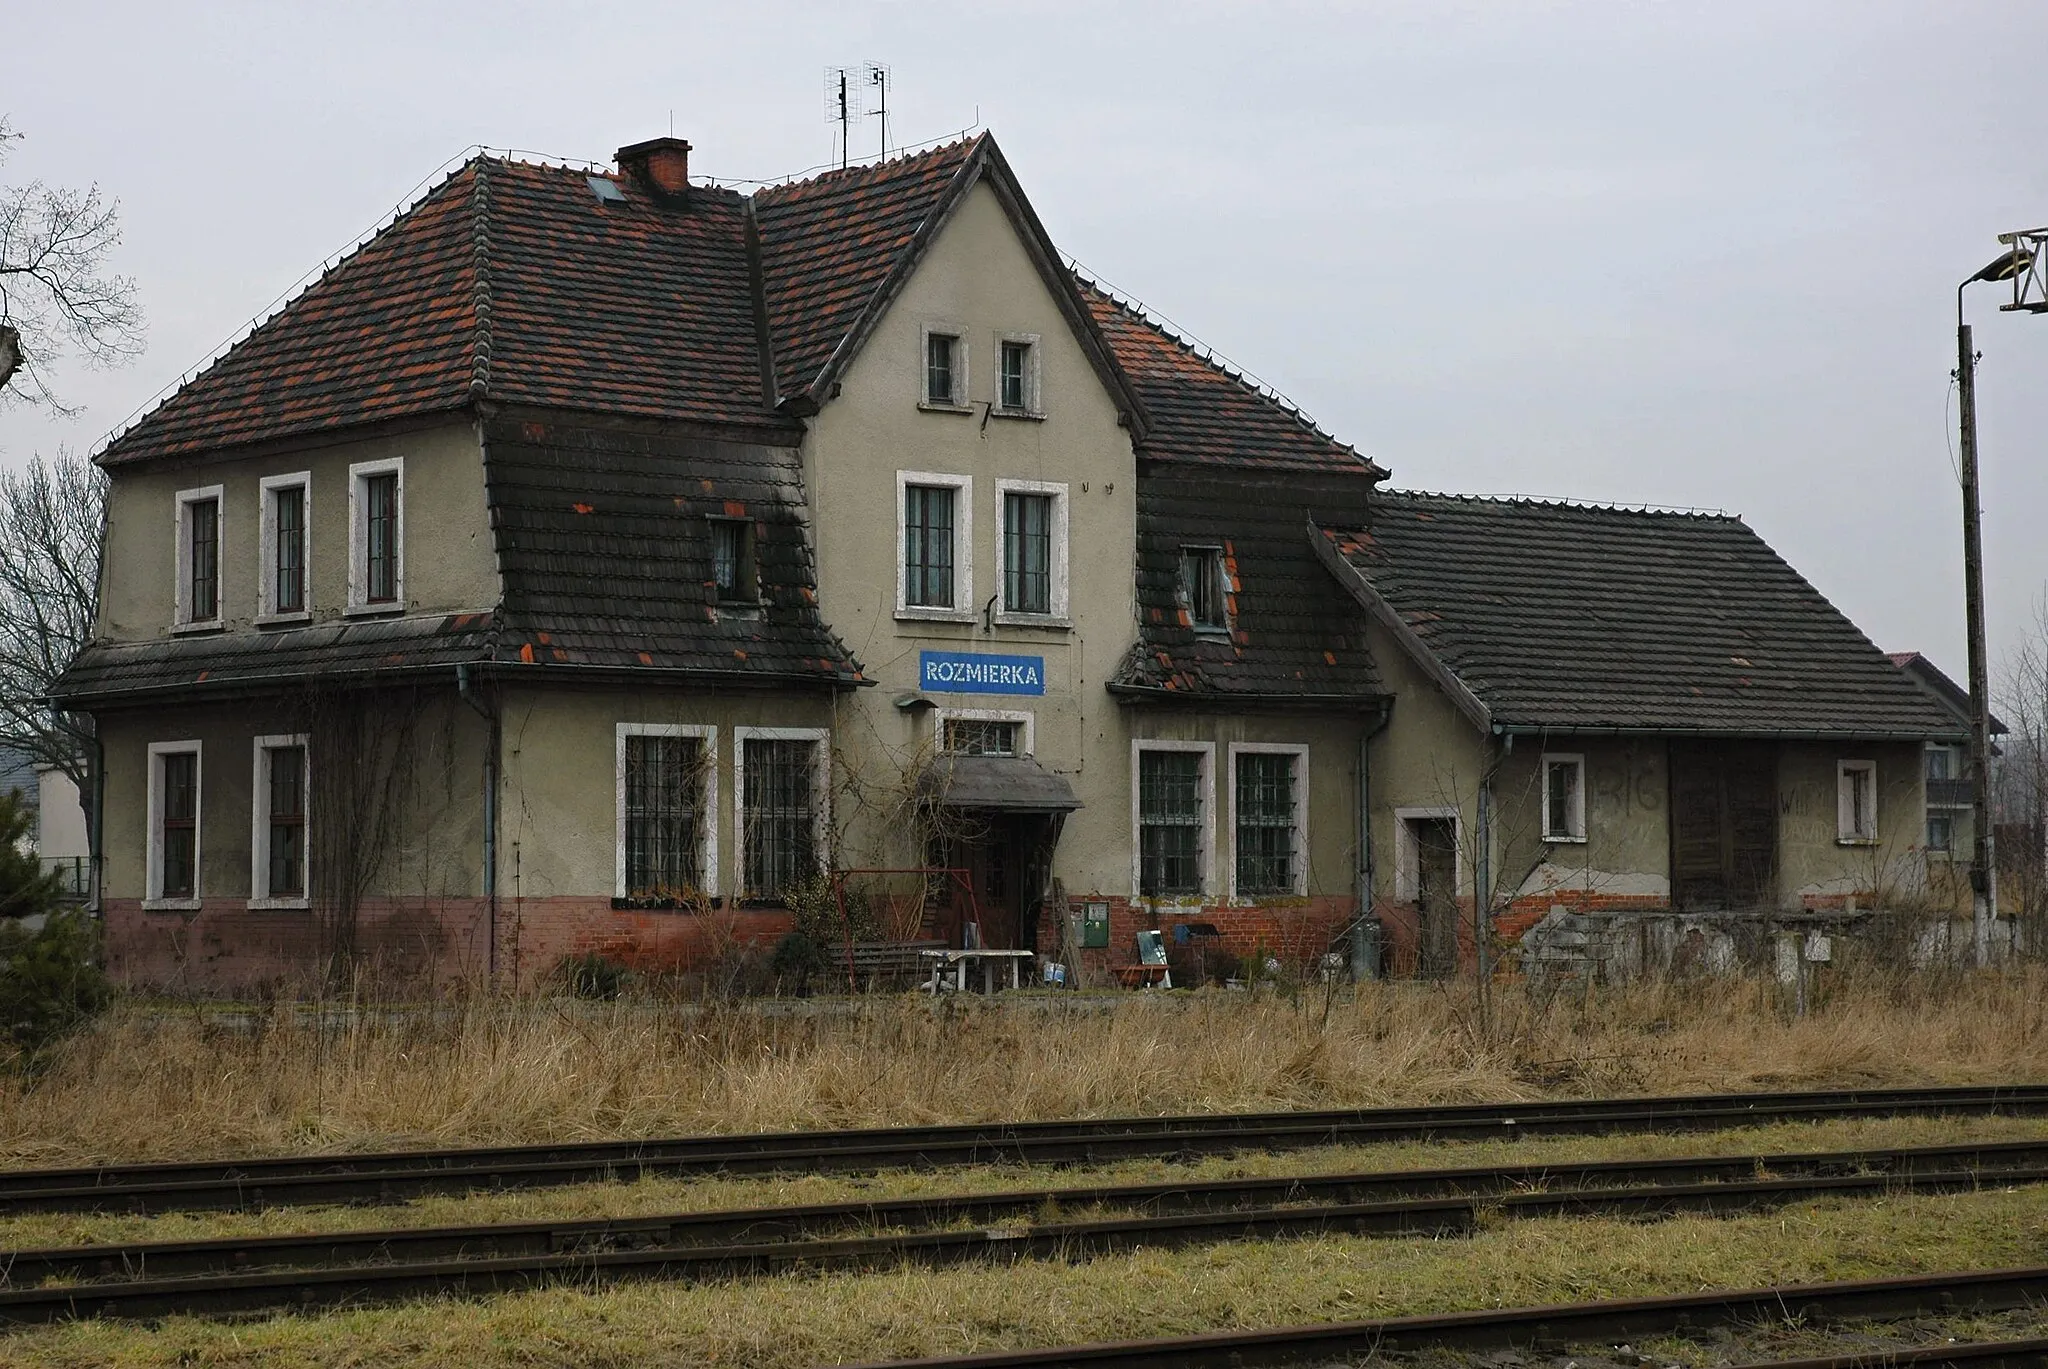 Photo showing: Rozmierka railway station, Poland